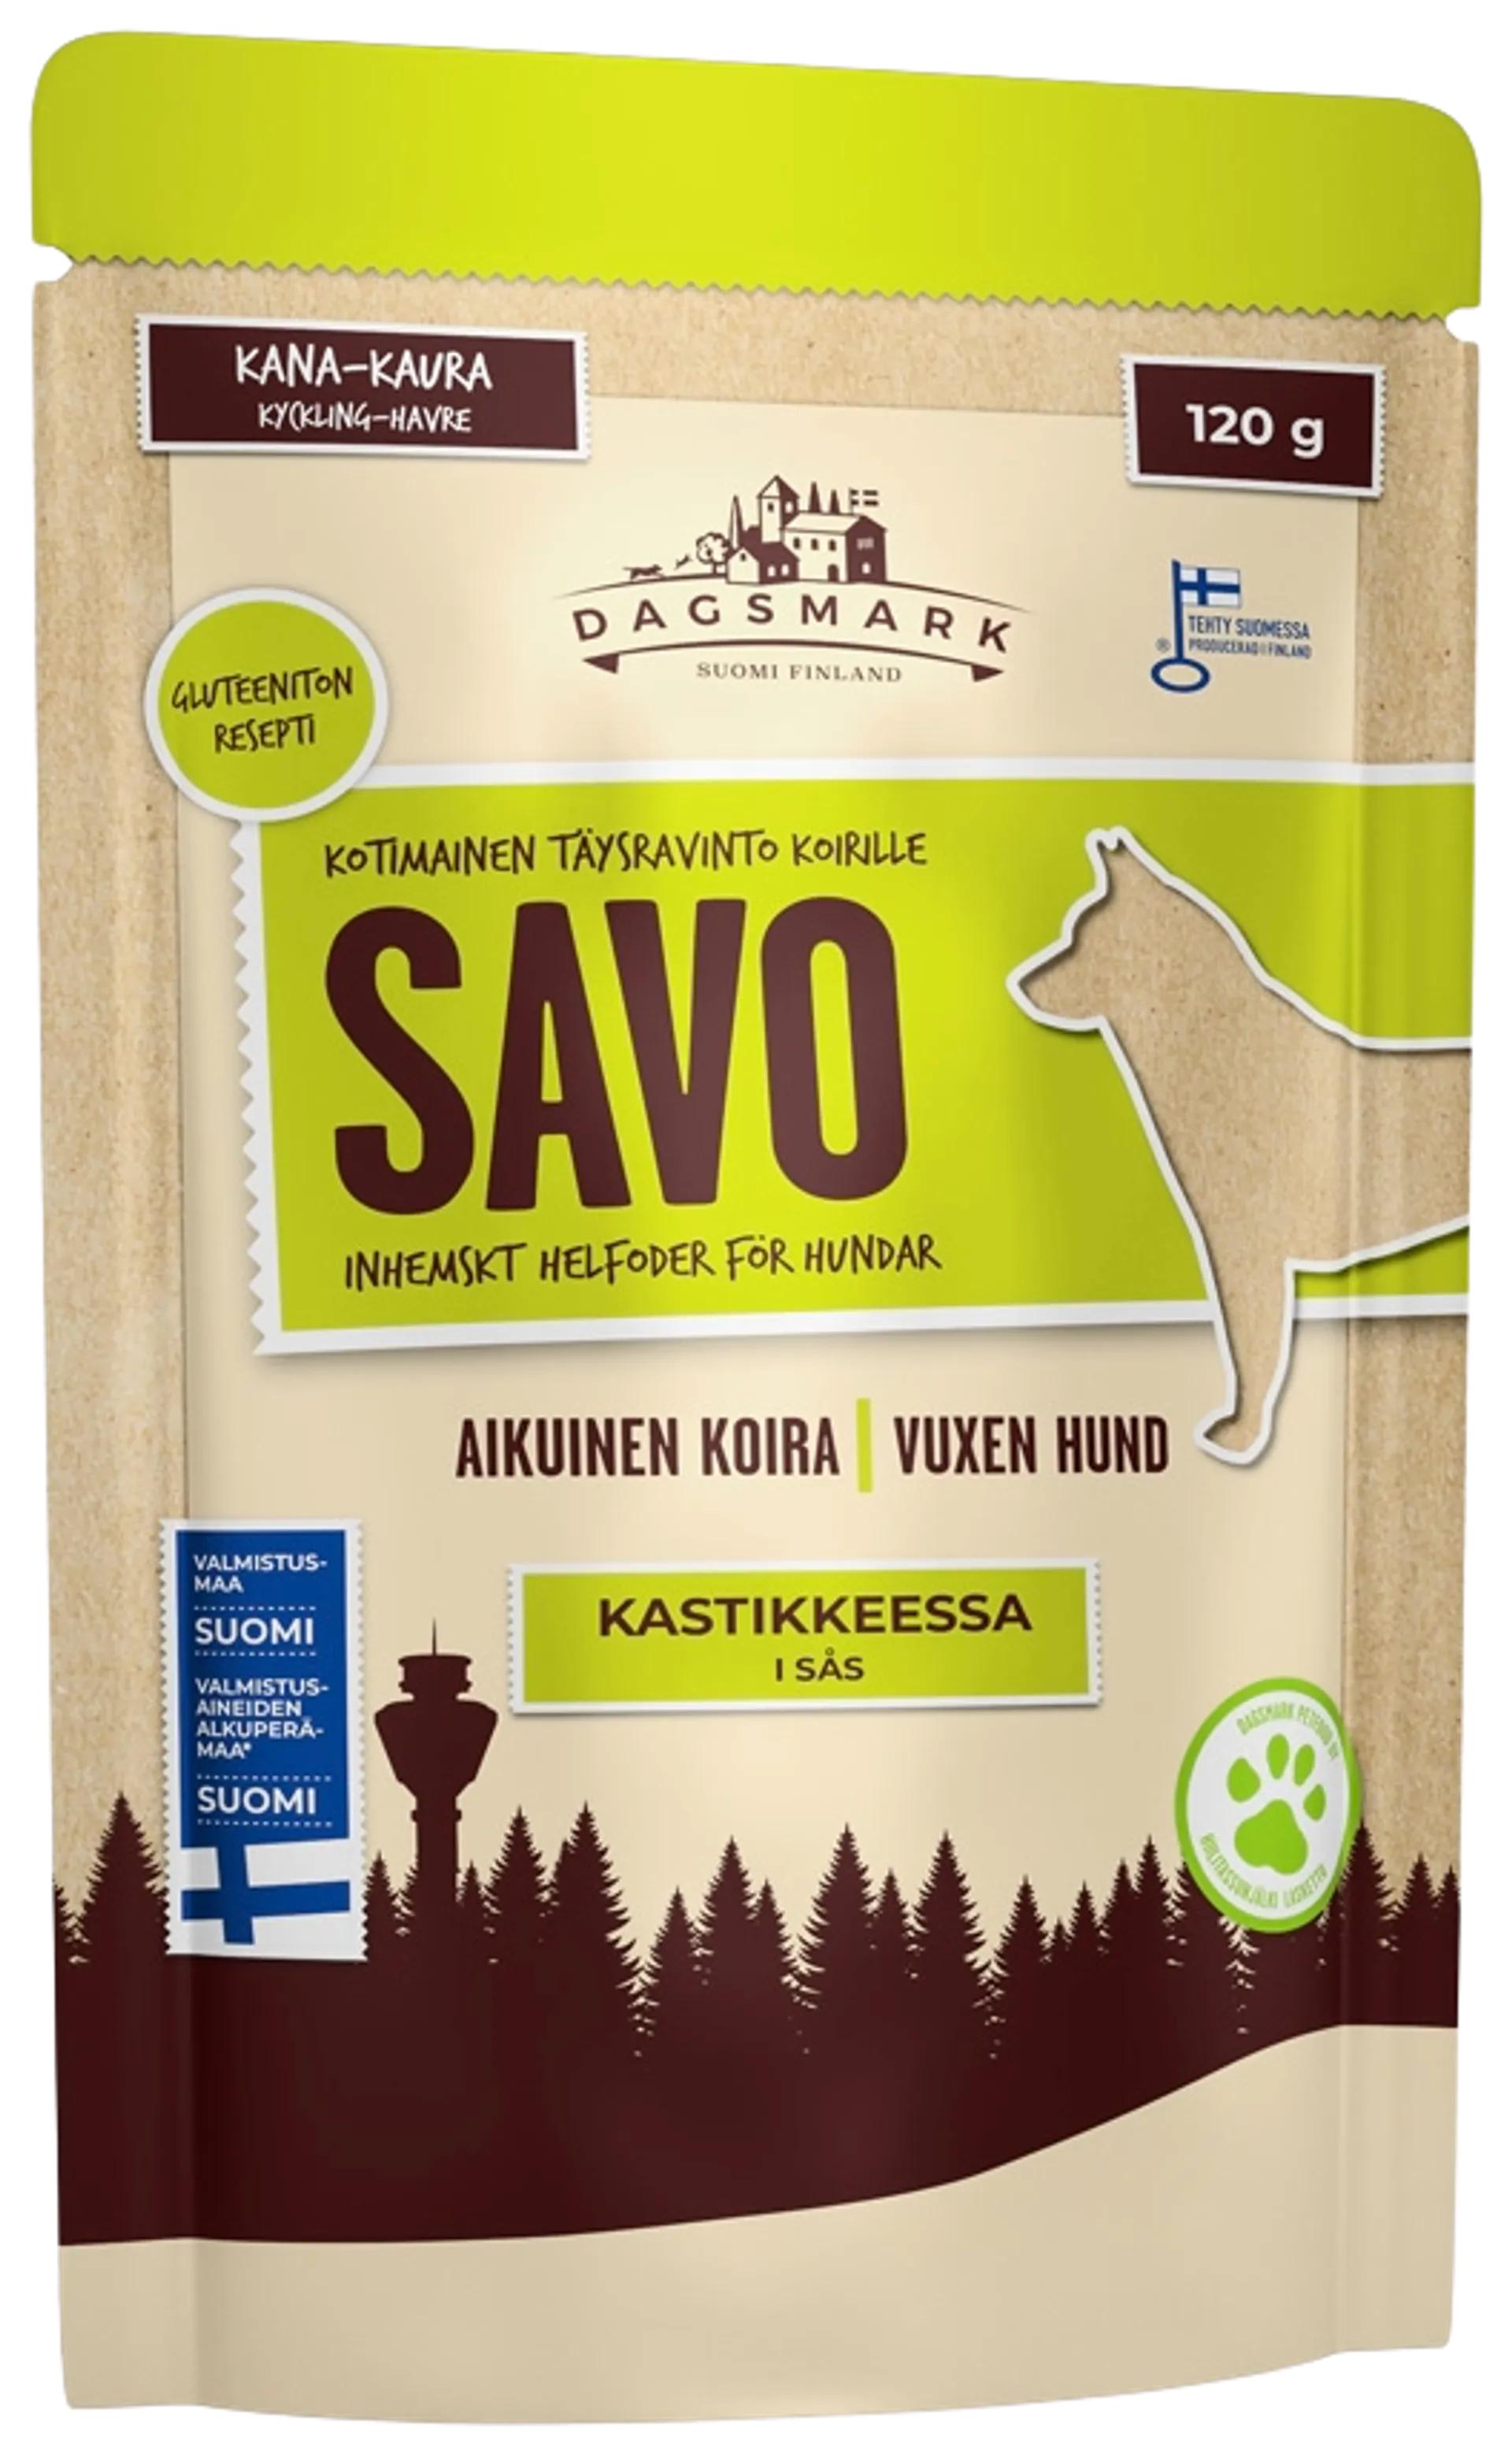 Dagsmark SAVO kana-kaura kastikkeessa 120 g